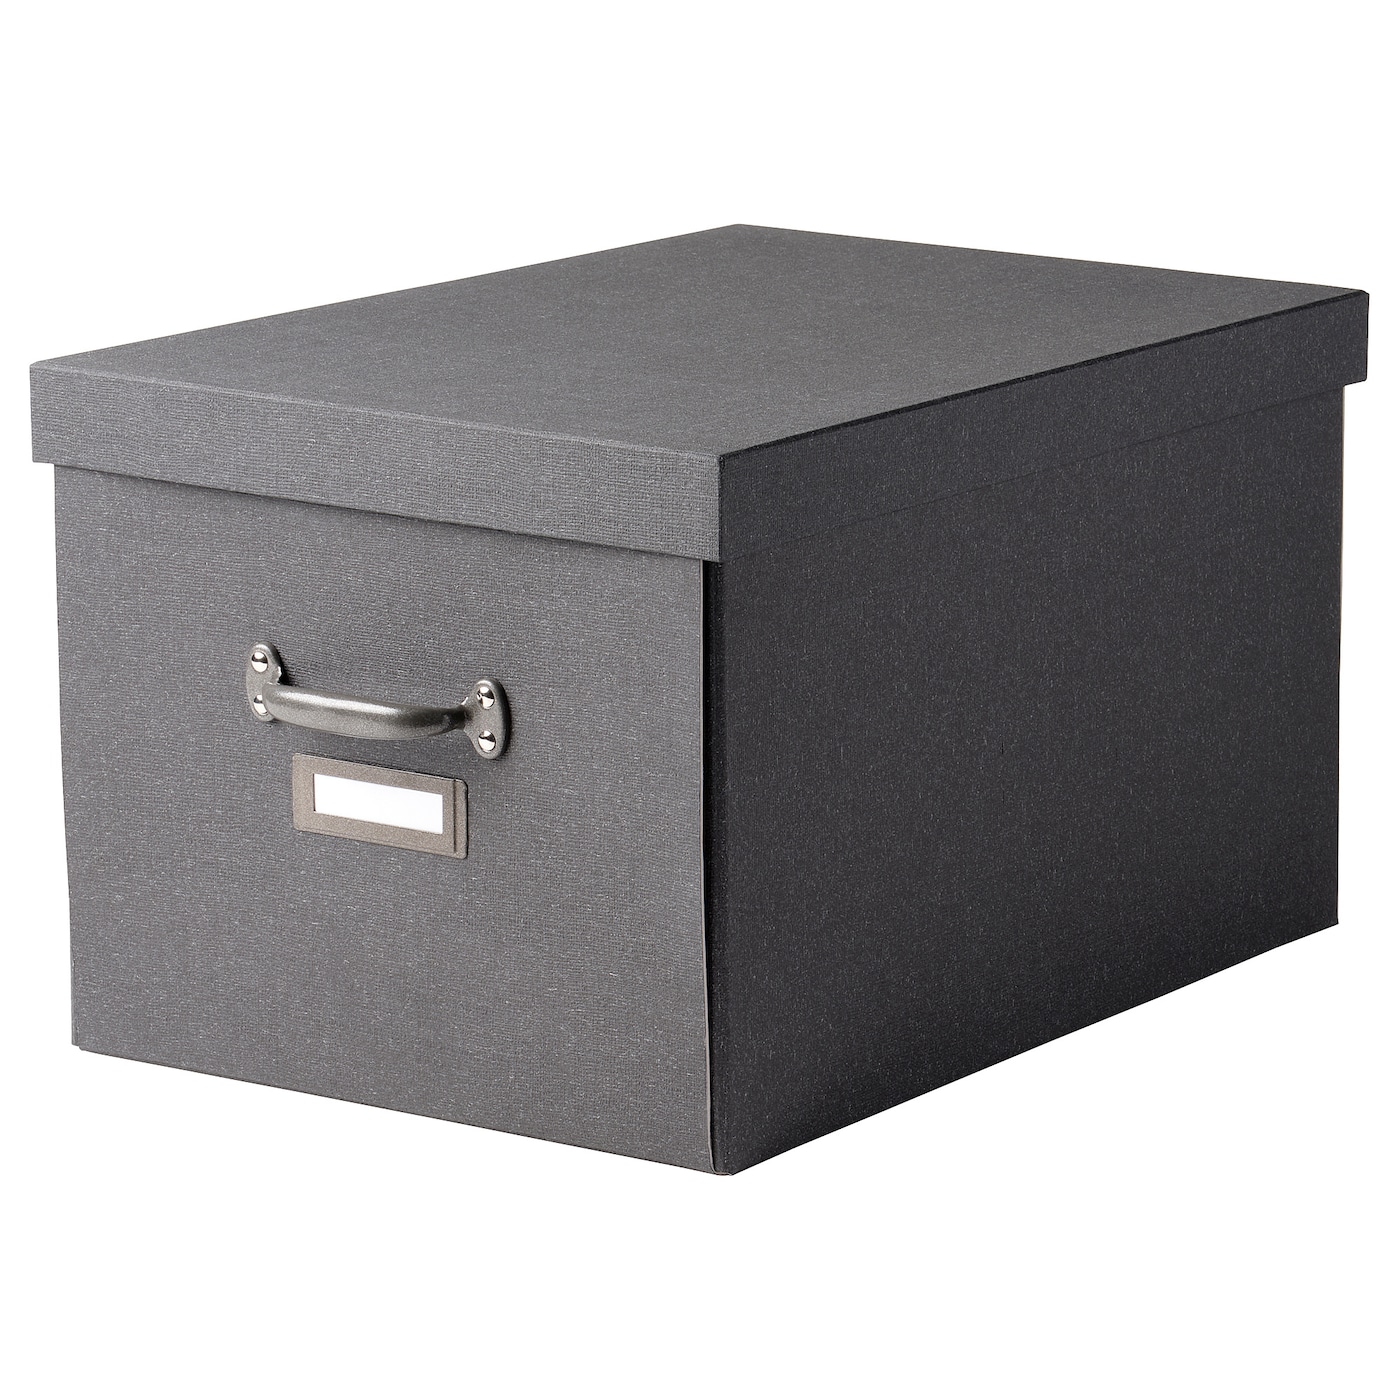 Коробка с крышкой - TJOG IKEA/ЧУГ ИКЕА, 35x56x30 см,  серый